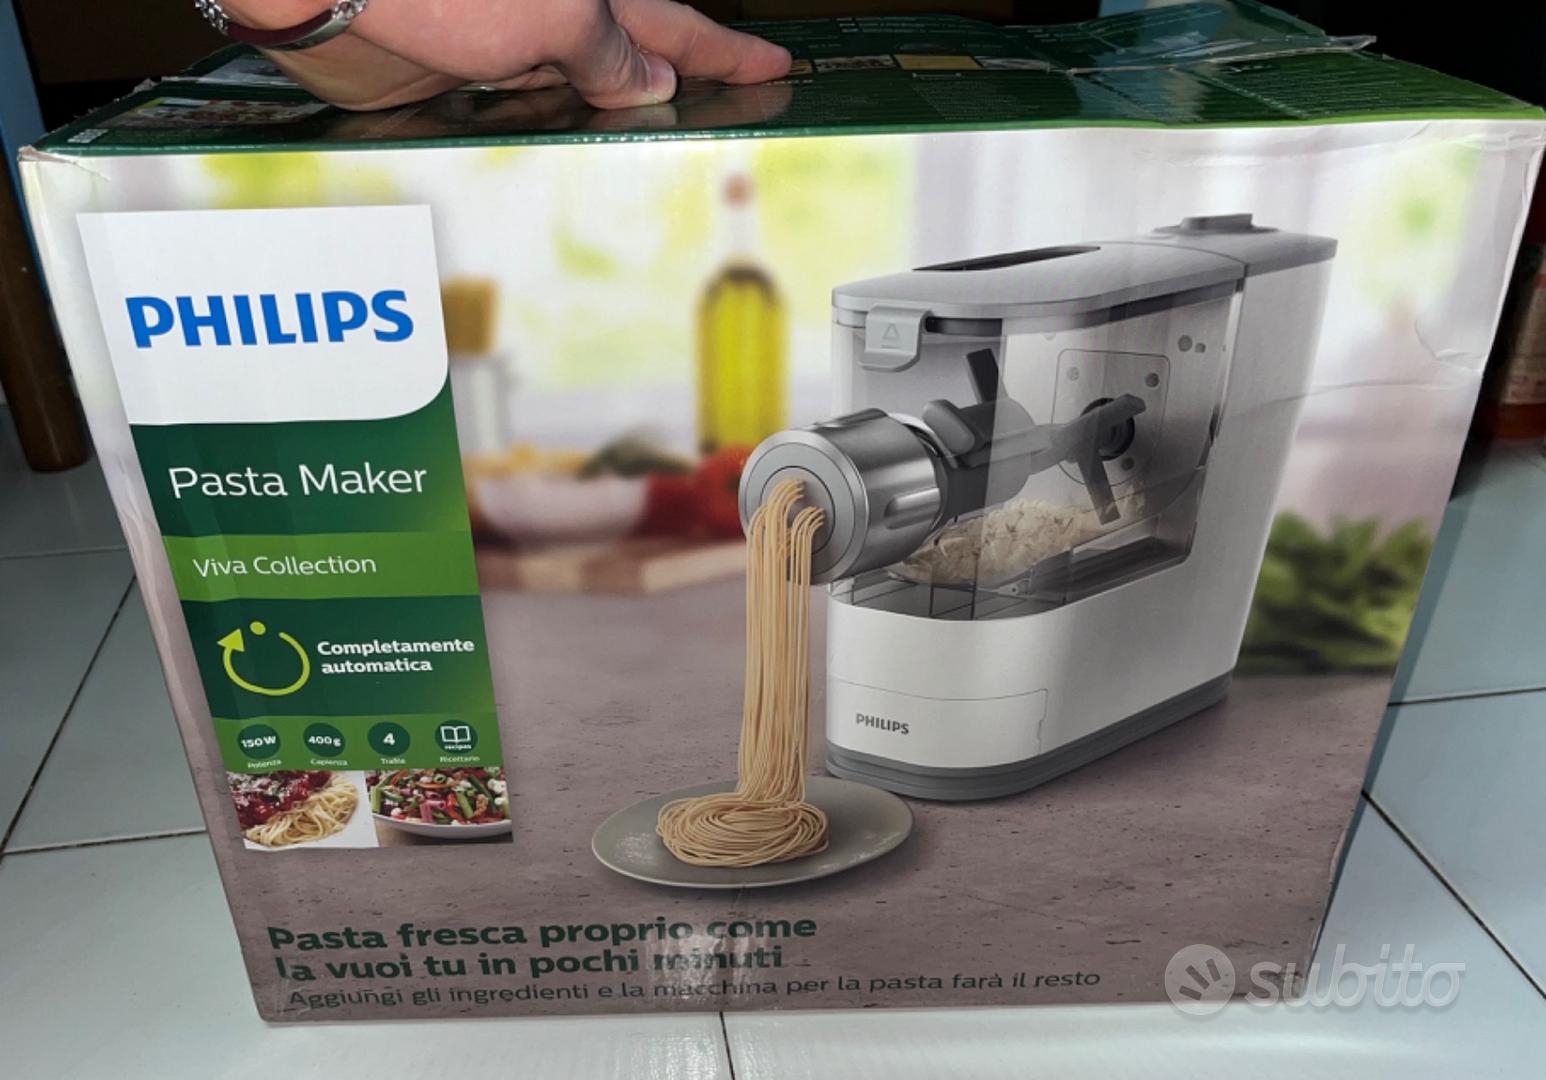 Philips macchina per la pasta (pasta maker) - Elettrodomestici In